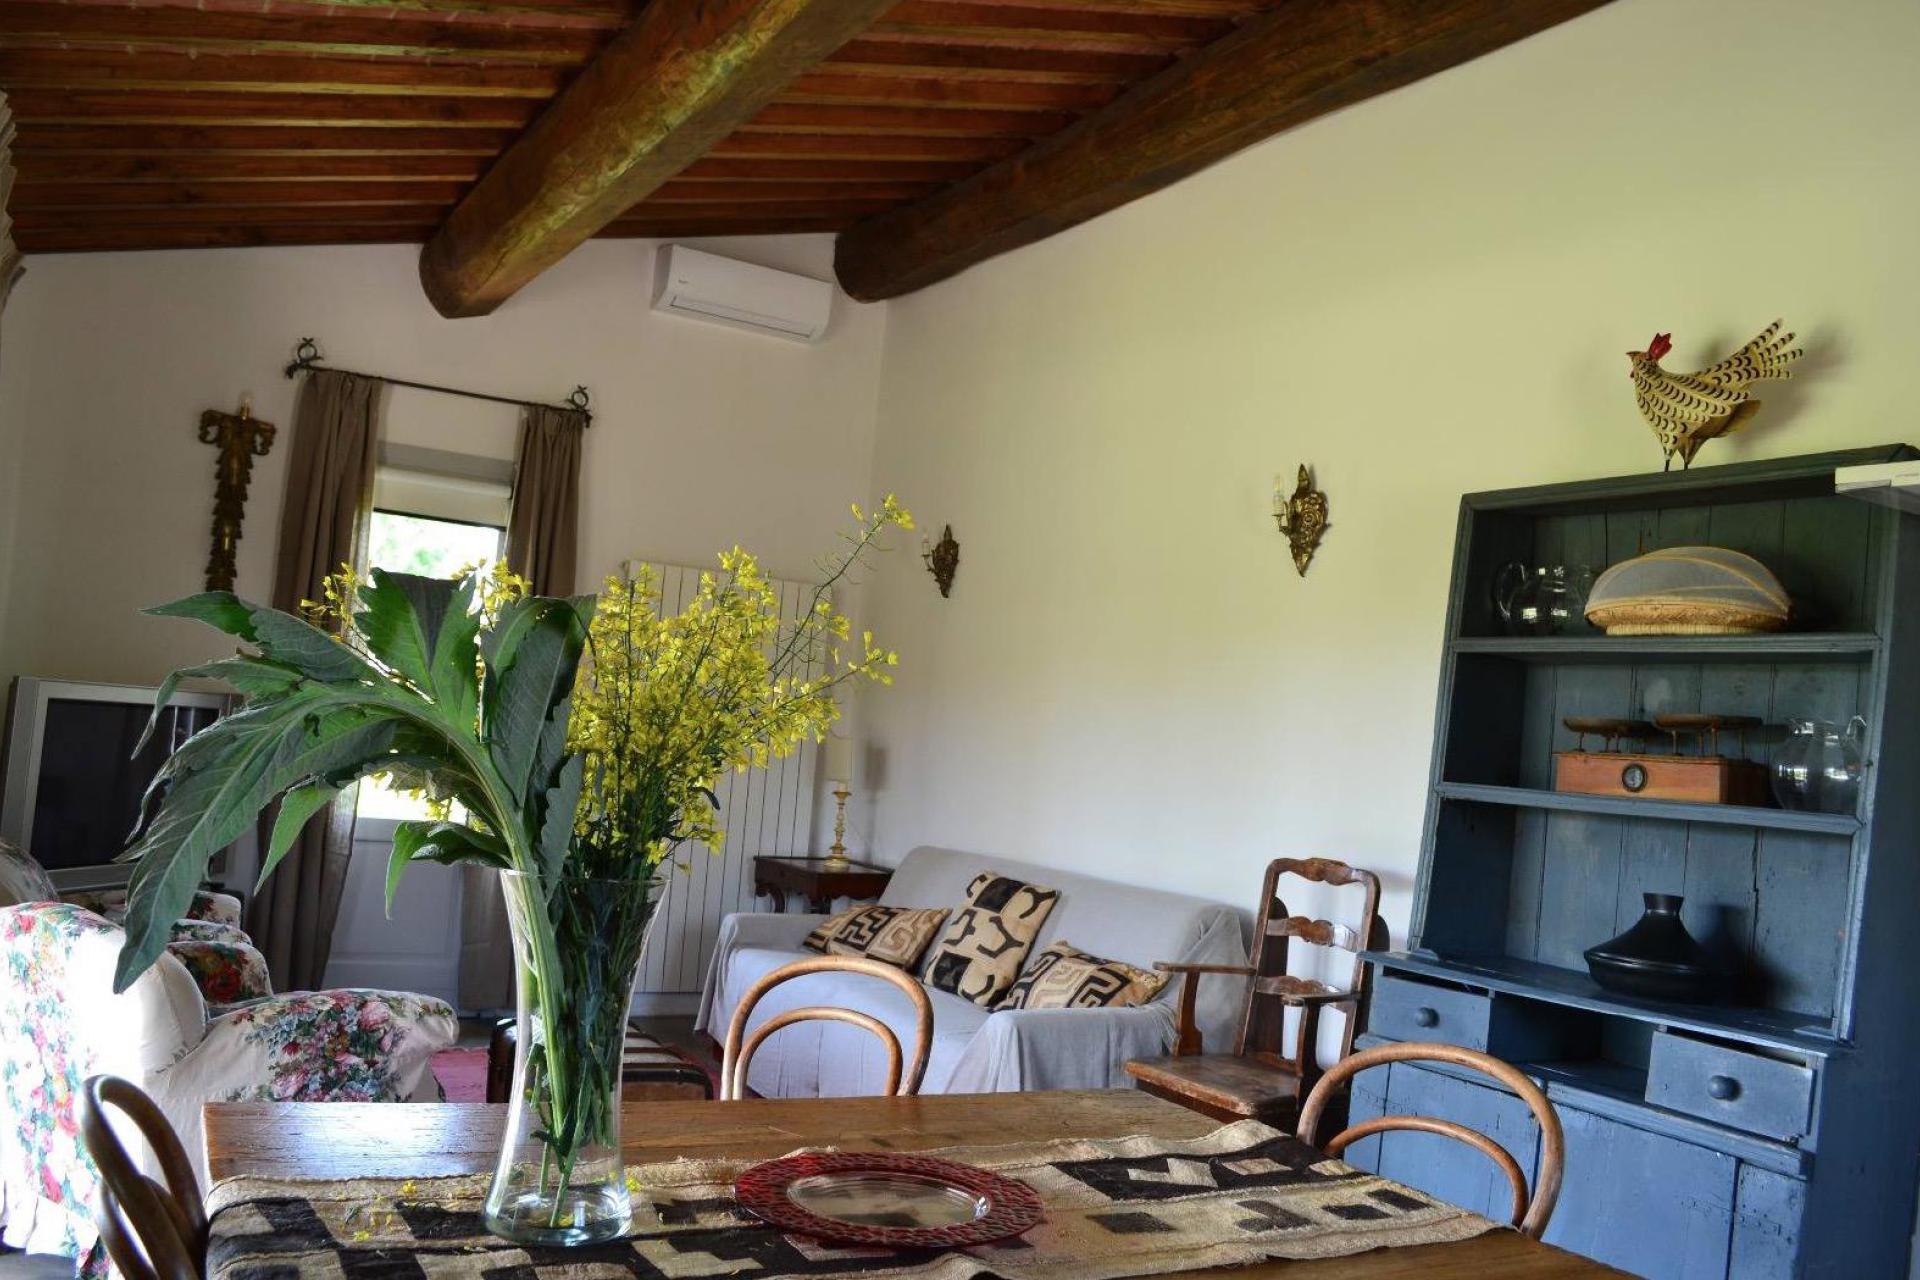 Agriturismo Toskana 8 Ferienwohnungen und 1 Ferienhaus in ländlicher Umgebung bei Siena